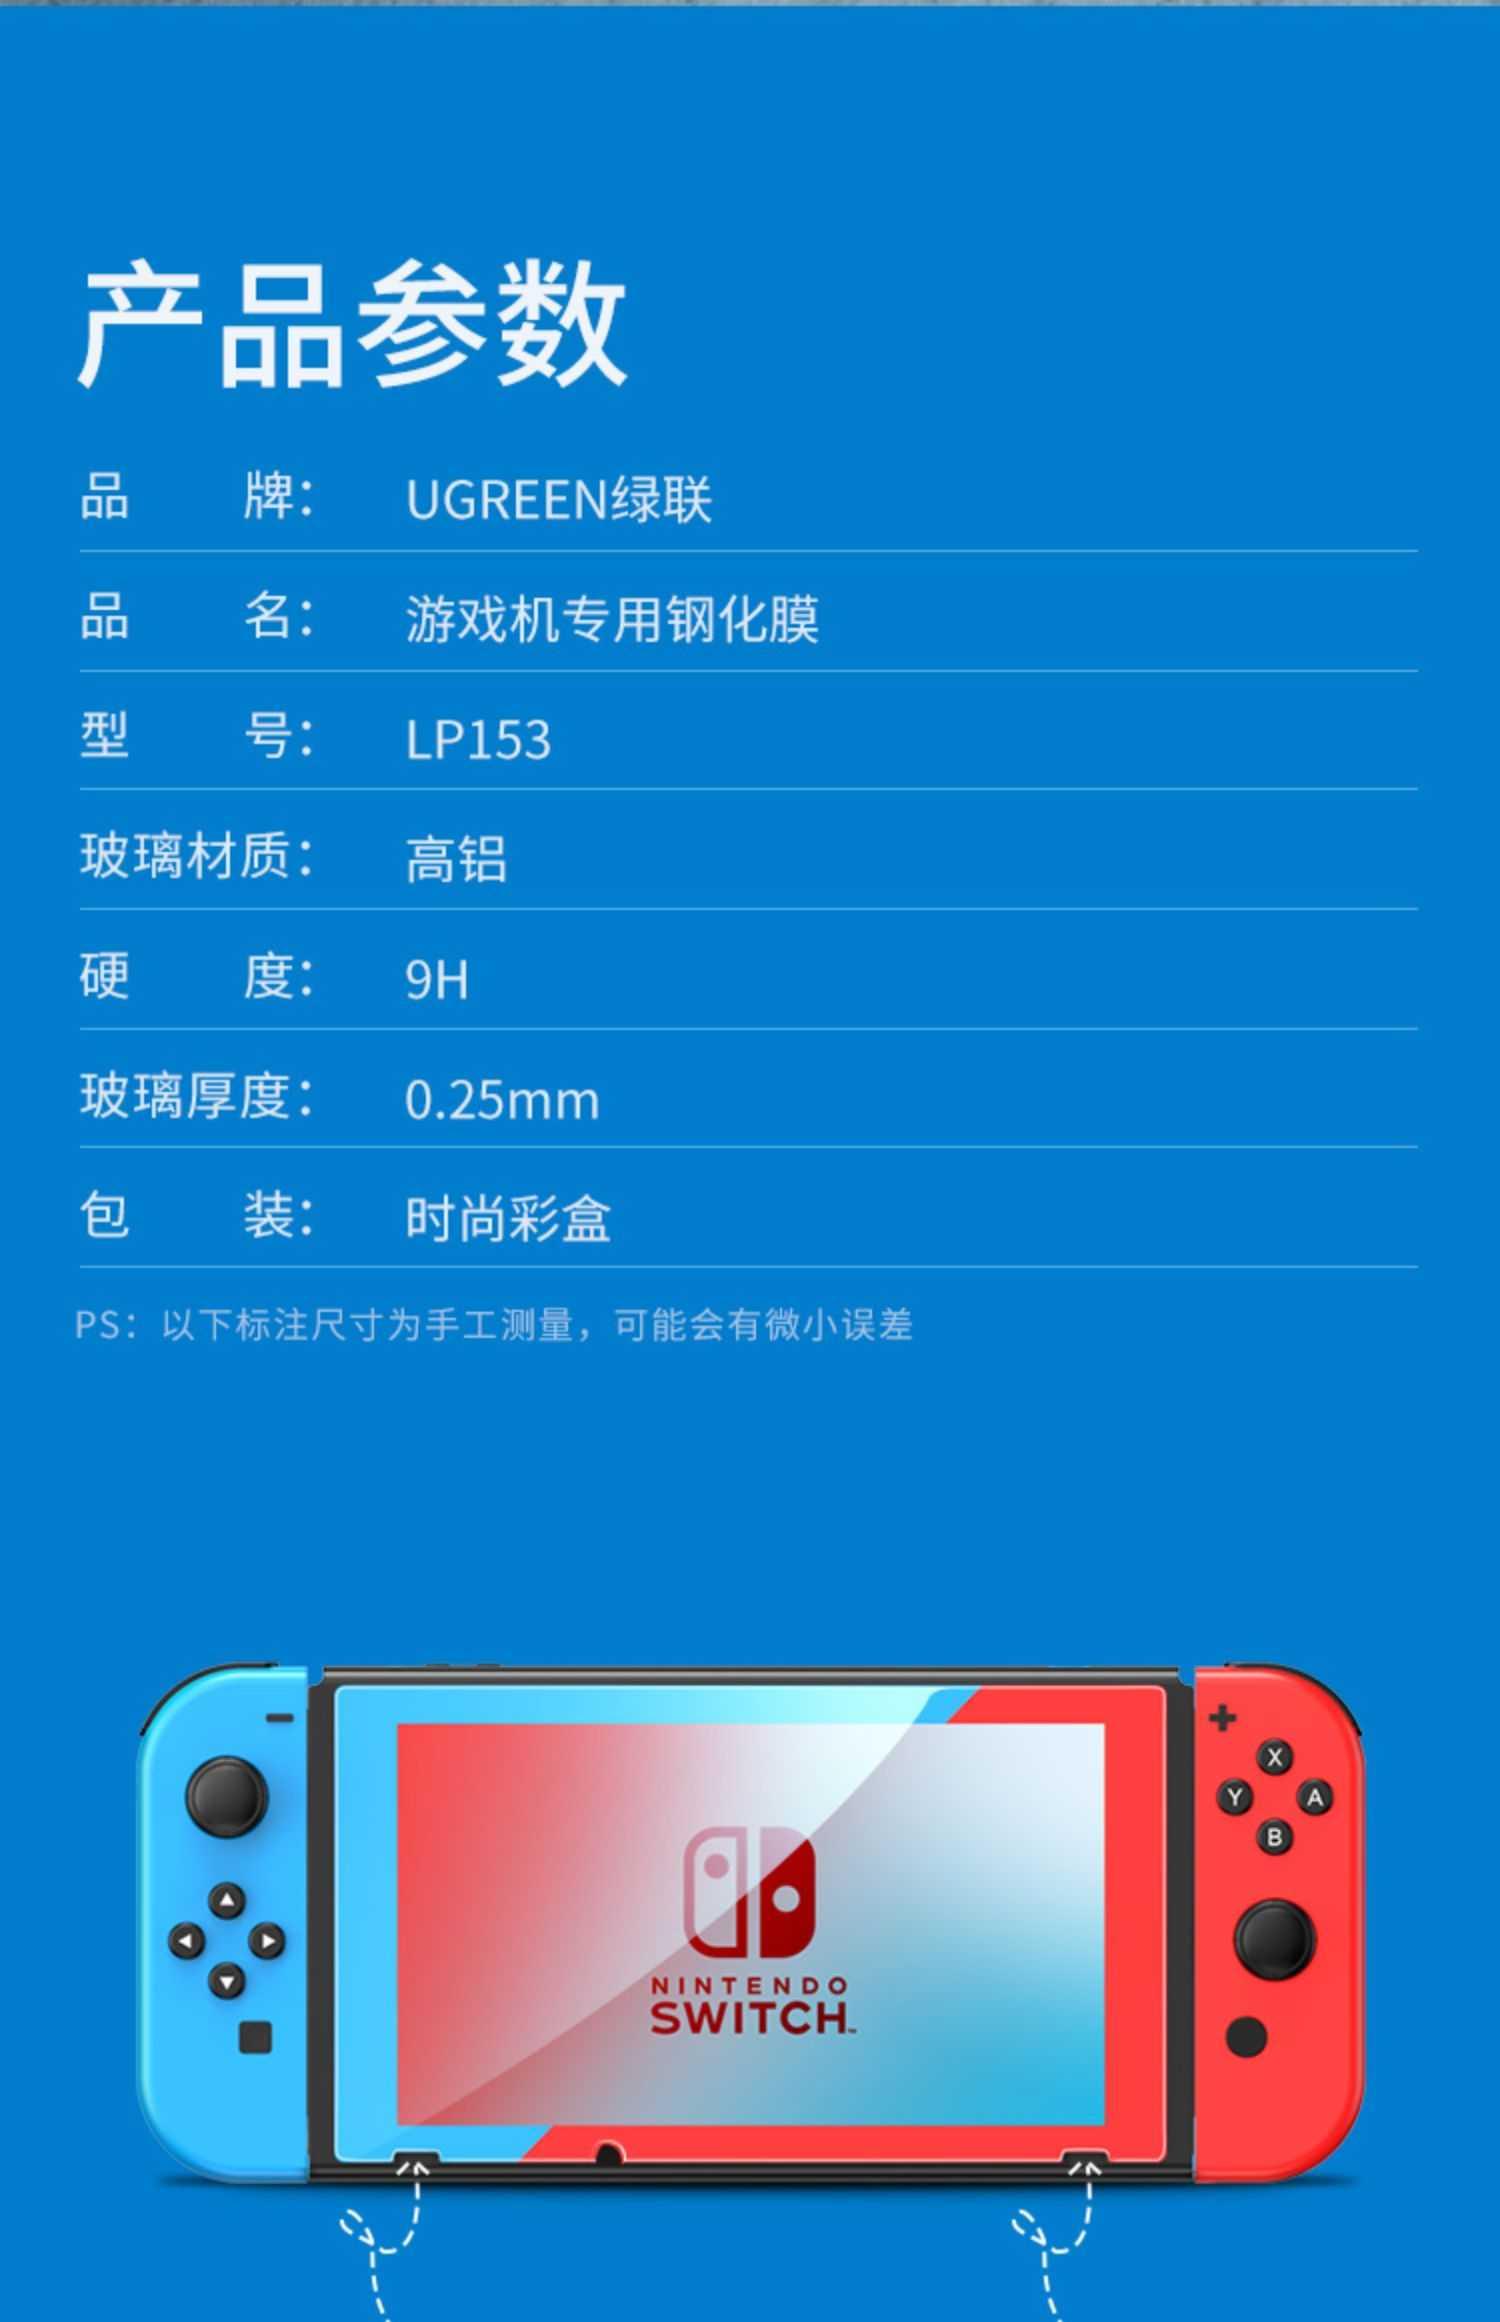 Ugreen UG20129LP153TK Viền Nâu và Vàng Kính cường lực bảo vệ màn hình Nintendo Switch chủ đề Pikachu - HÀNG CHÍNH HÃNG